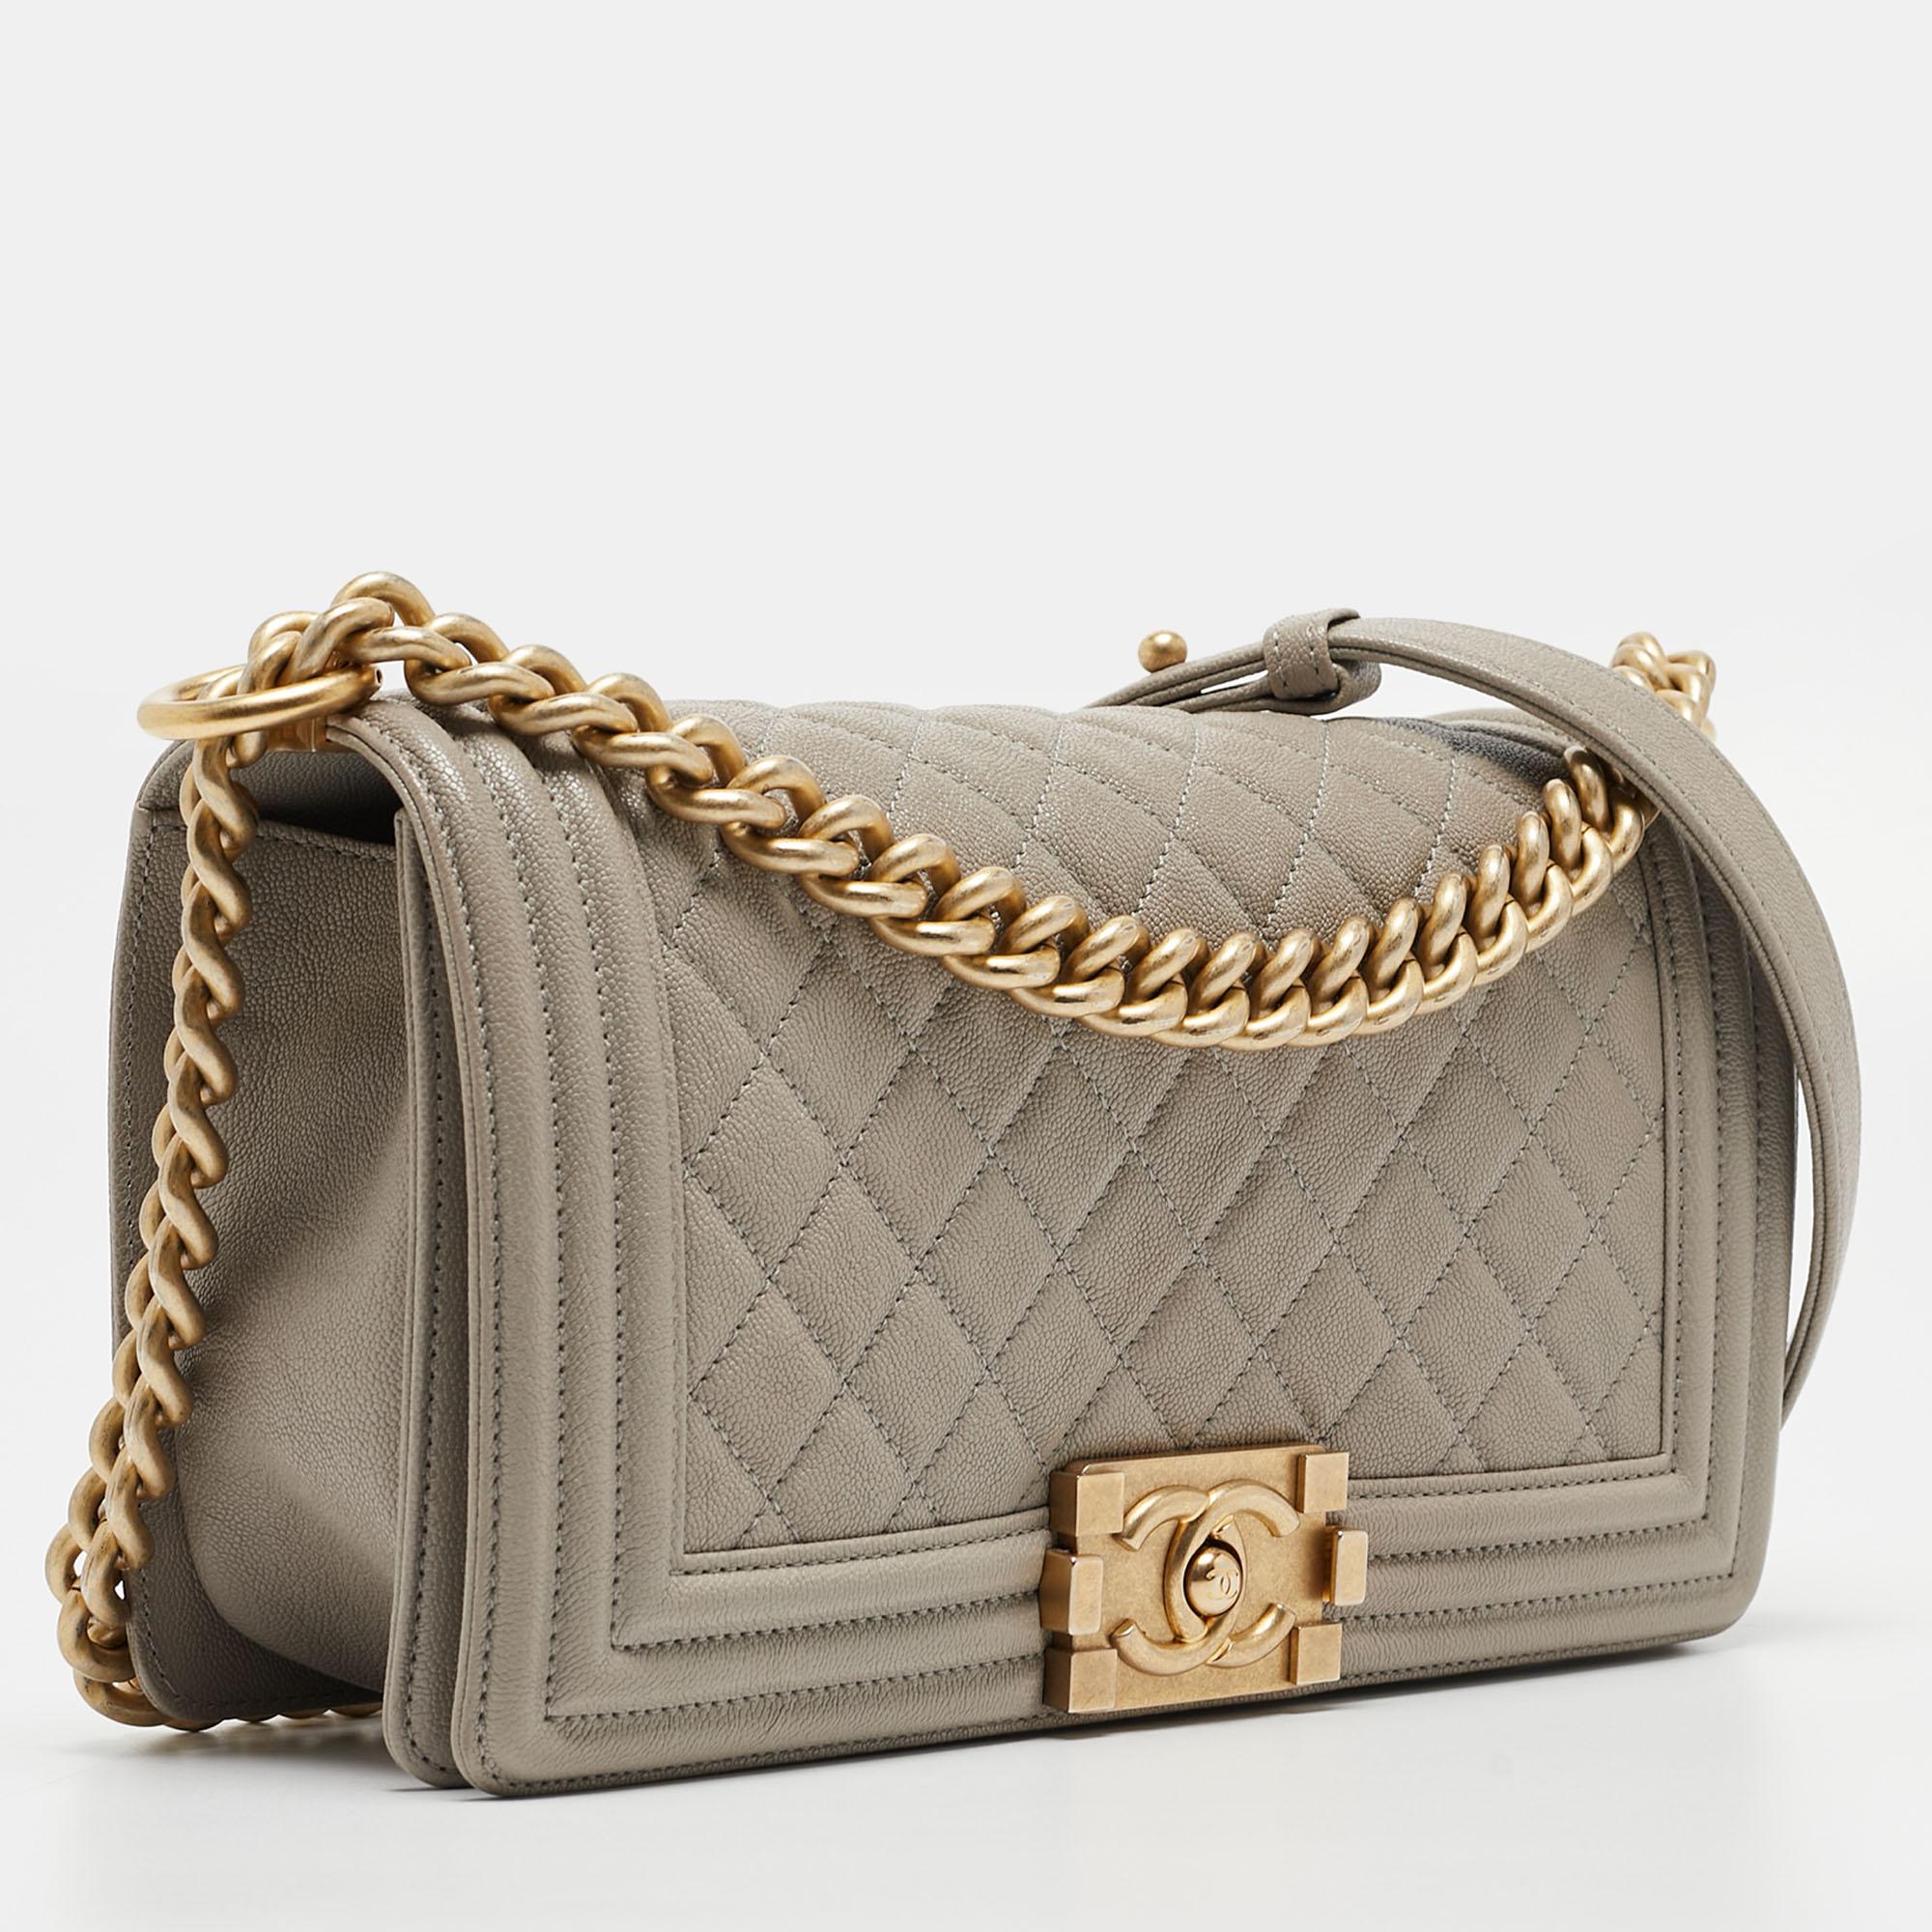 L'un des styles de sac les plus appréciés de Chanel, le Boy Flap est un excellent investissement en matière de mode. Son attrait intemporel, associé à l'excellence de l'artisanat de la Maison, en fait un sac de grande valeur. Ce sac à rabat Boy de